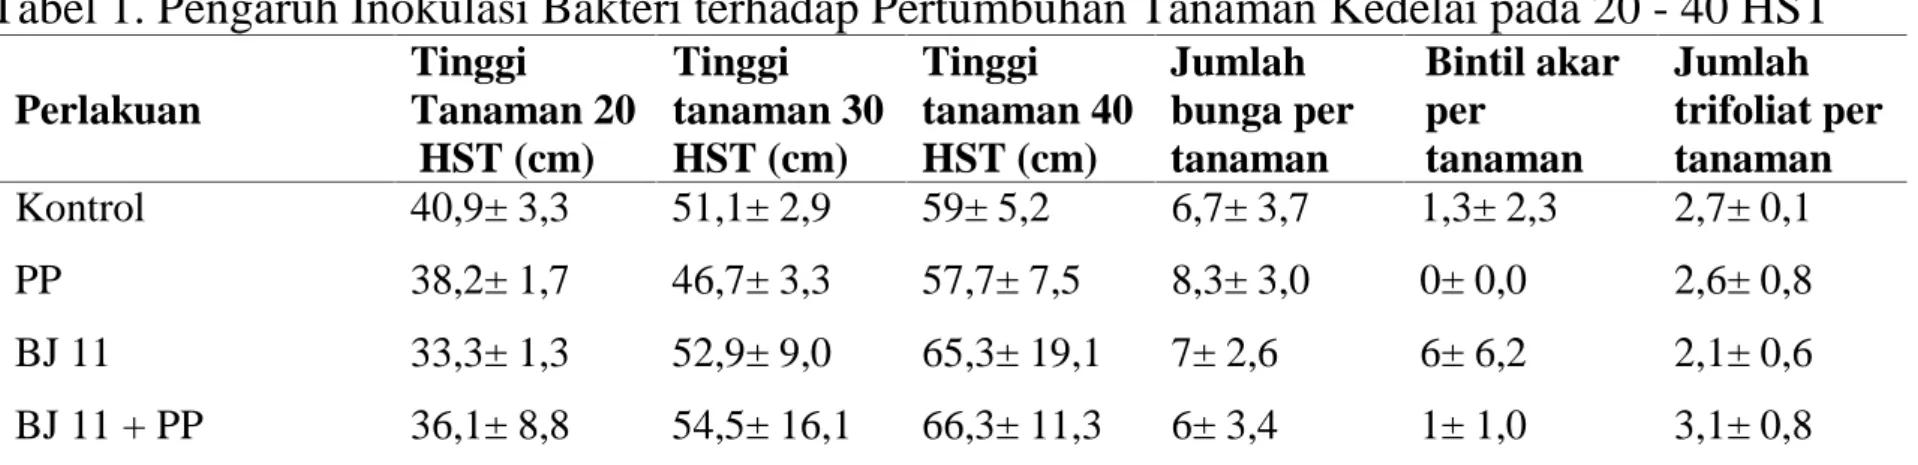 Tabel 1. Pengaruh Inokulasi Bakteri terhadap Pertumbuhan Tanaman Kedelai pada 20 - 40 HST Perlakuan Tinggi Tanaman 20 HST (cm) Tinggi tanaman 30HST (cm) Tinggi tanaman 40HST (cm) Jumlah bunga pertanaman Bintil akarpertanaman Jumlah trifoliat pertanaman Kon